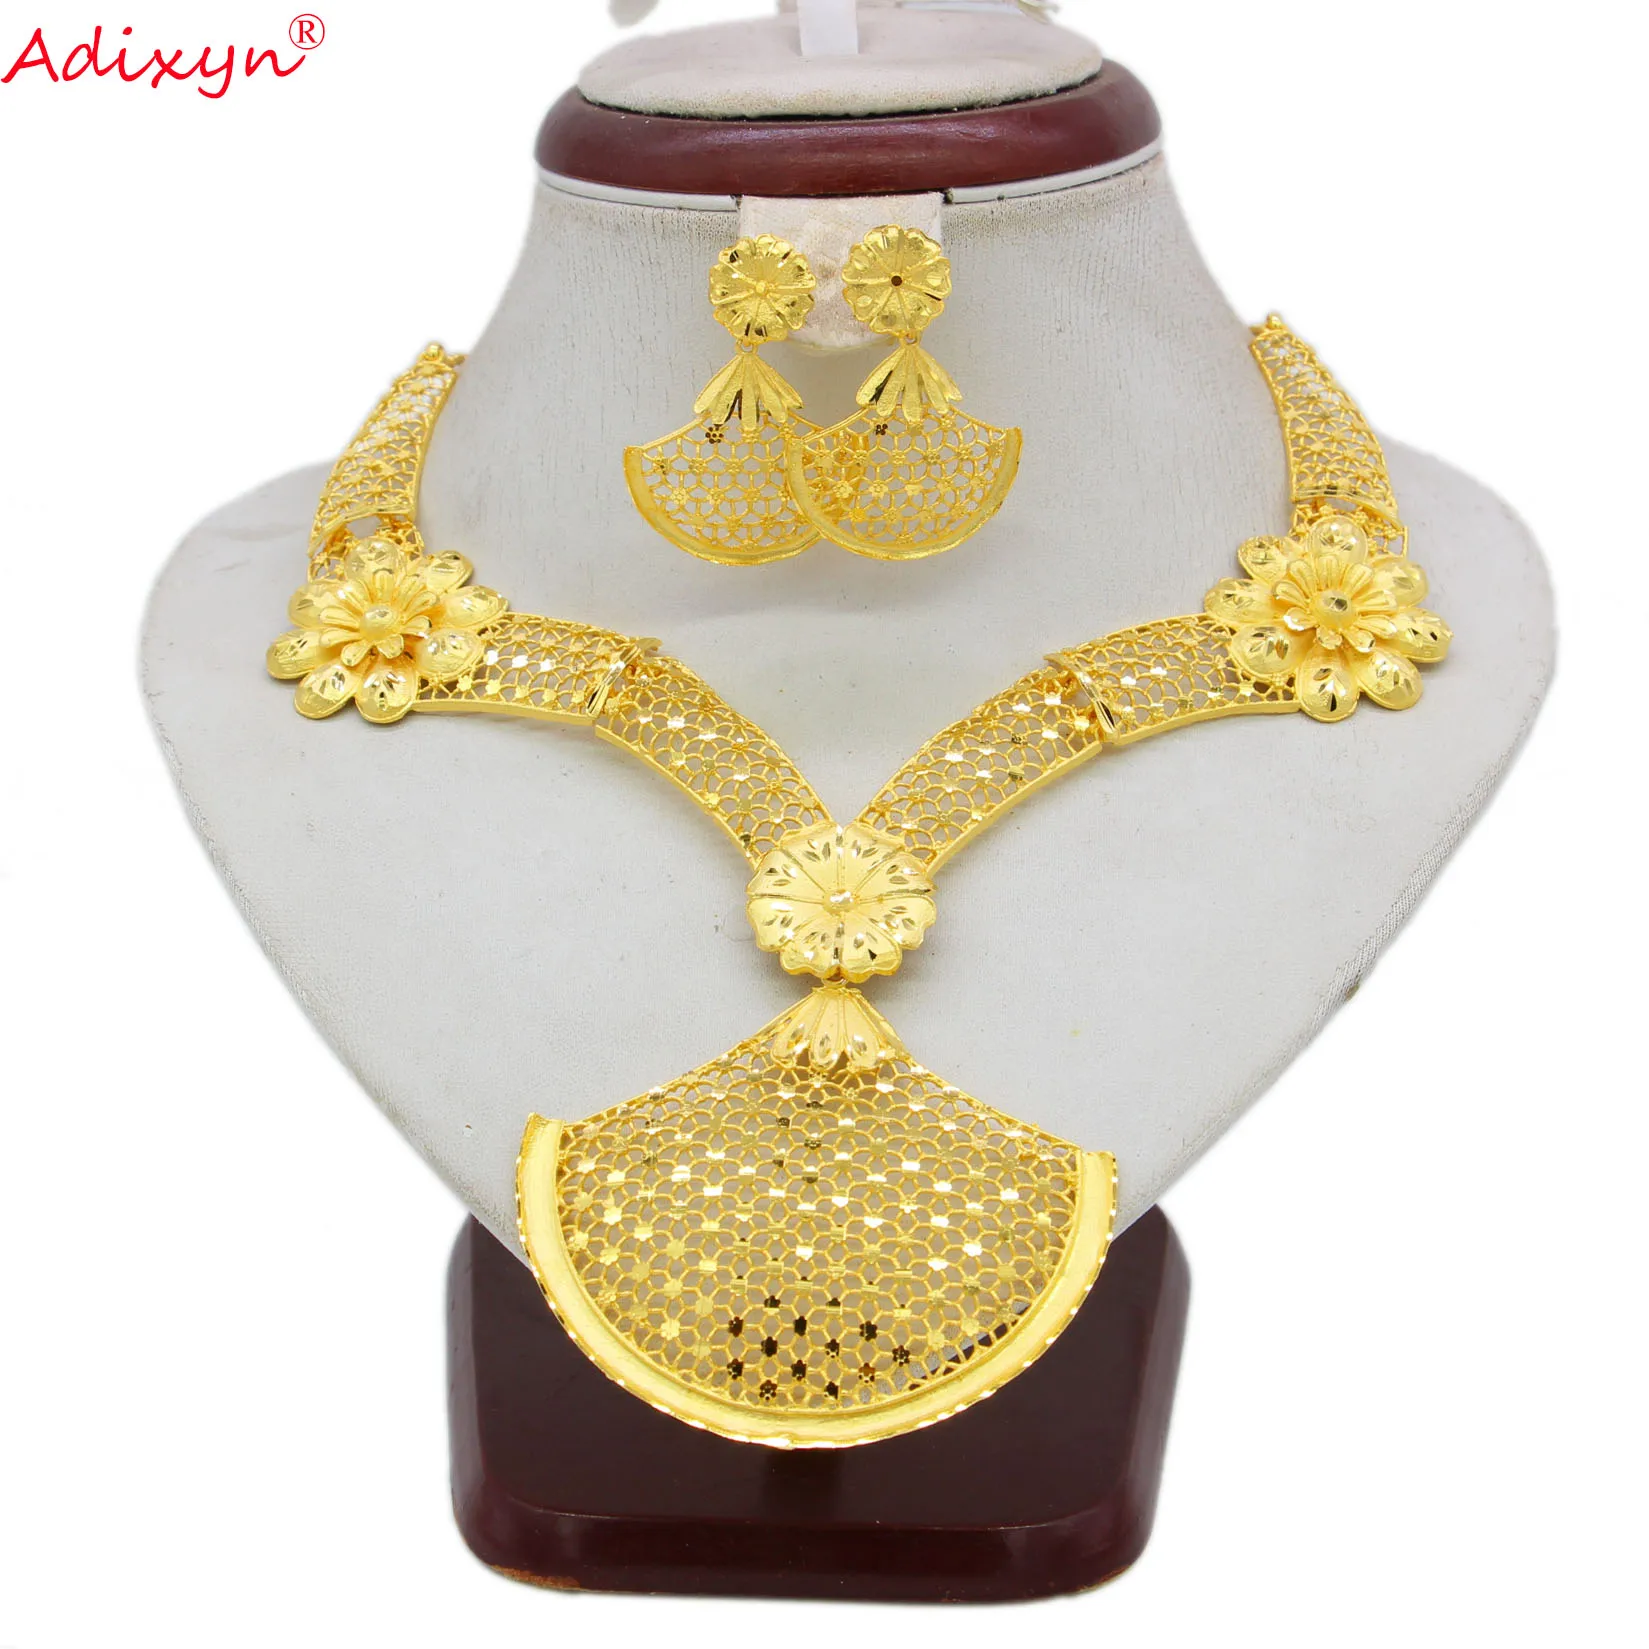 Adixyn collares умеренные серьги для женщин свадебный ювелирный набор золотого цвета ювелирные изделия африканские эфиопские индийские изделия ...